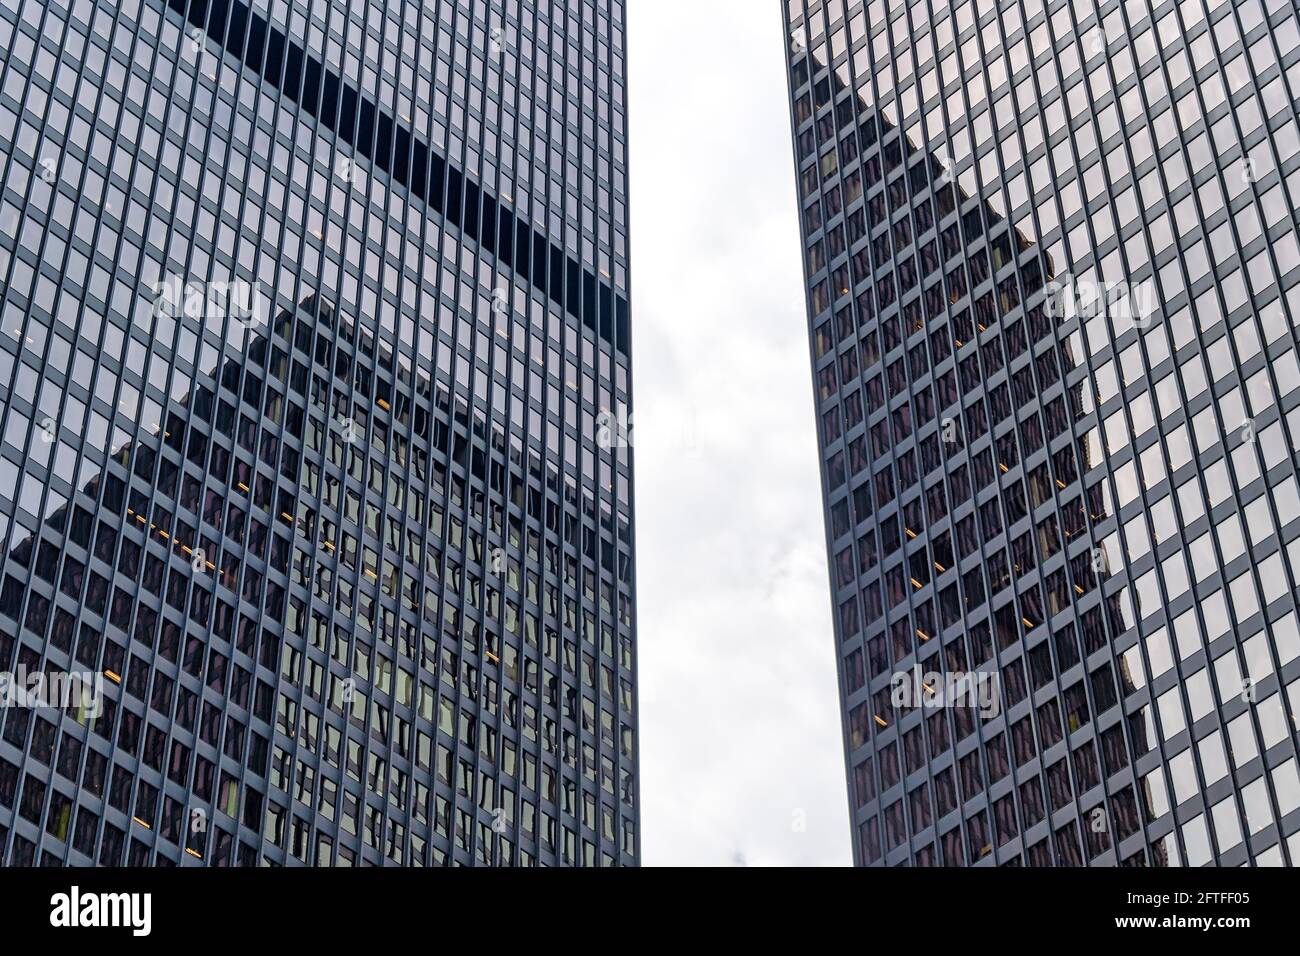 Résumé Architecture moderne des gratte-ciels dans le quartier du centre-ville de Toronto, Canada Banque D'Images